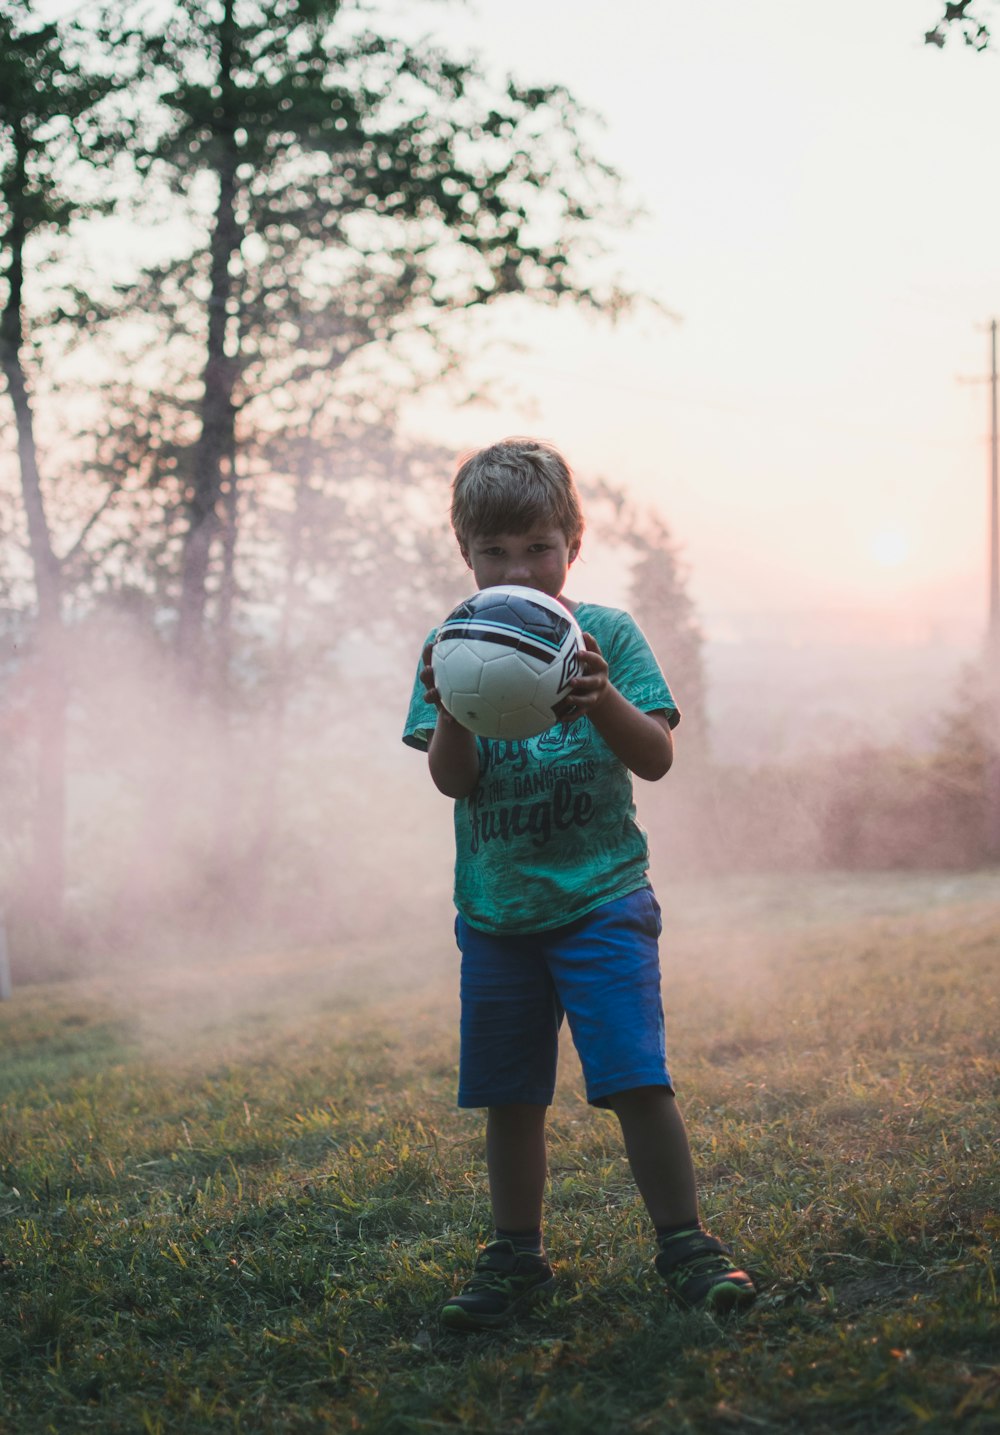 Fotografía de enfoque superficial de niño sosteniendo una pelota